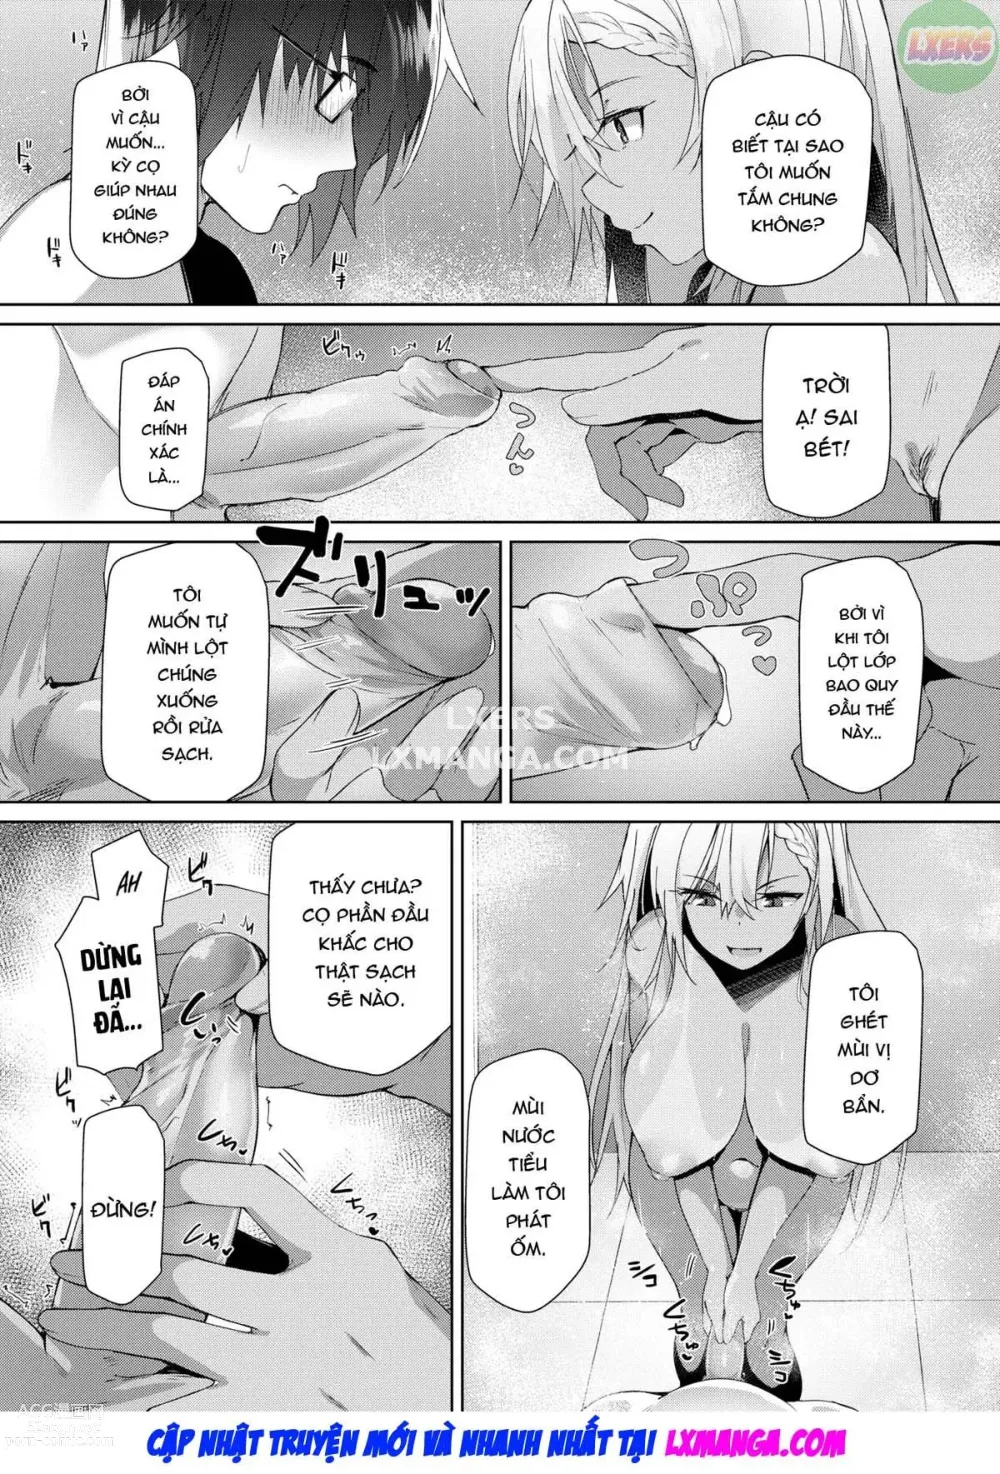 Page 15 of doujinshi Chỉ có thể bị cuốn hút